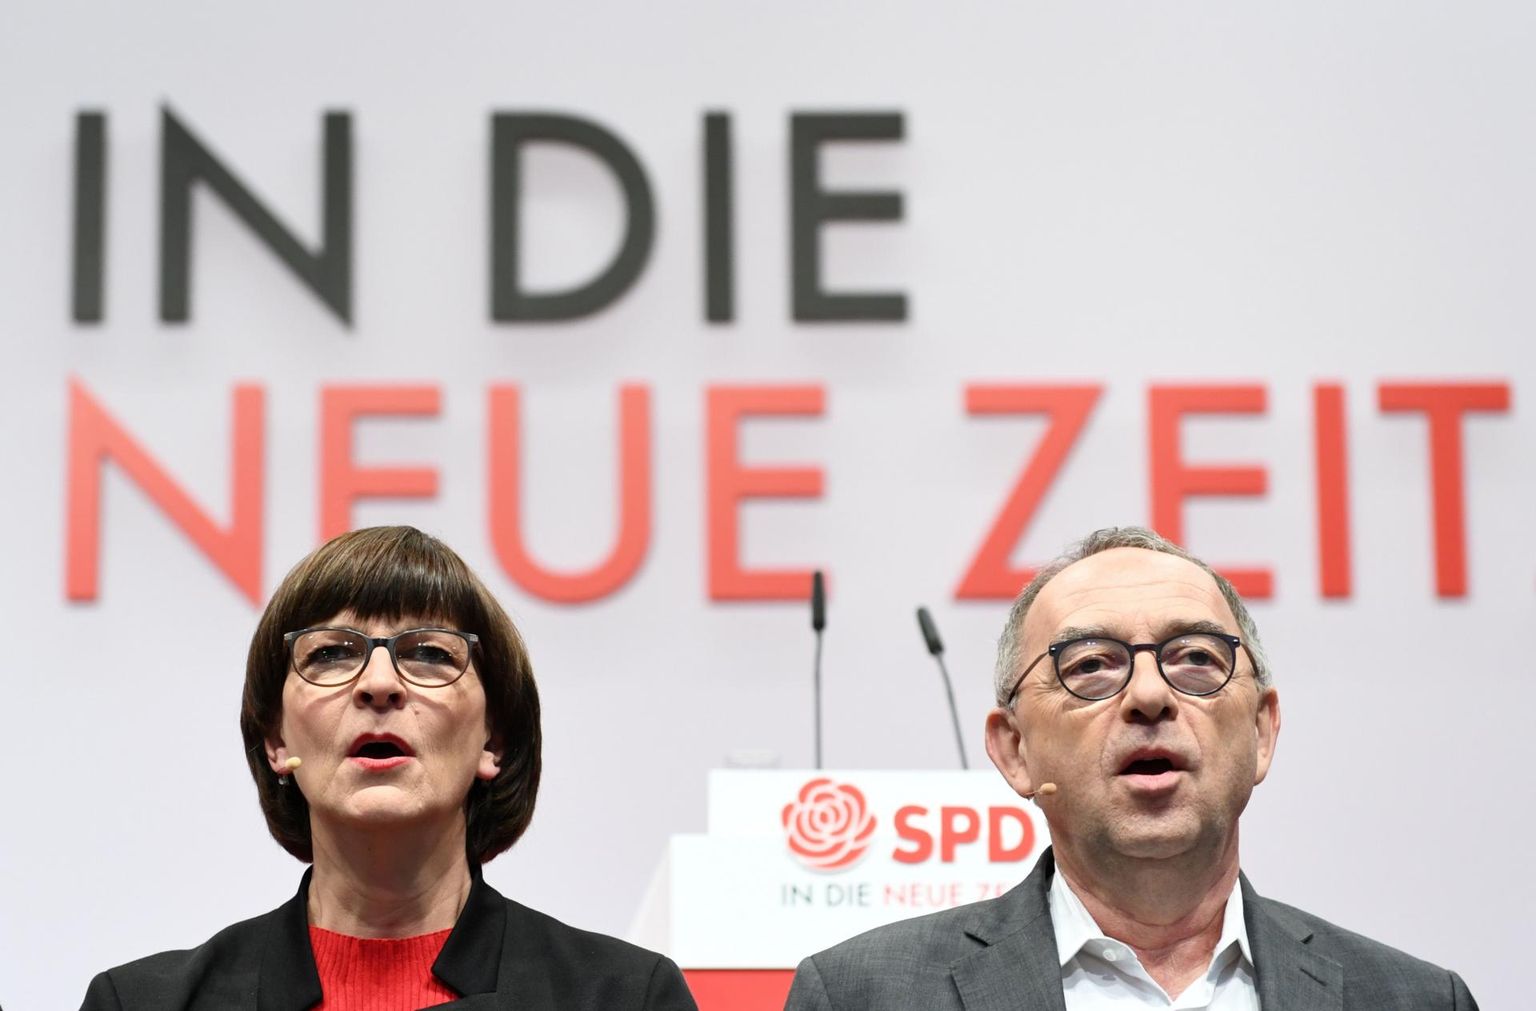 Saksamaa sotsiaaldemokraatide uued juhid Norbert Walter-Borjans (paremal) ja Saskia Esken lubavad erakonnale uut tulevikku, mis eelkõige seisneb senisest vasakpoolsema suuna võtmises.
 